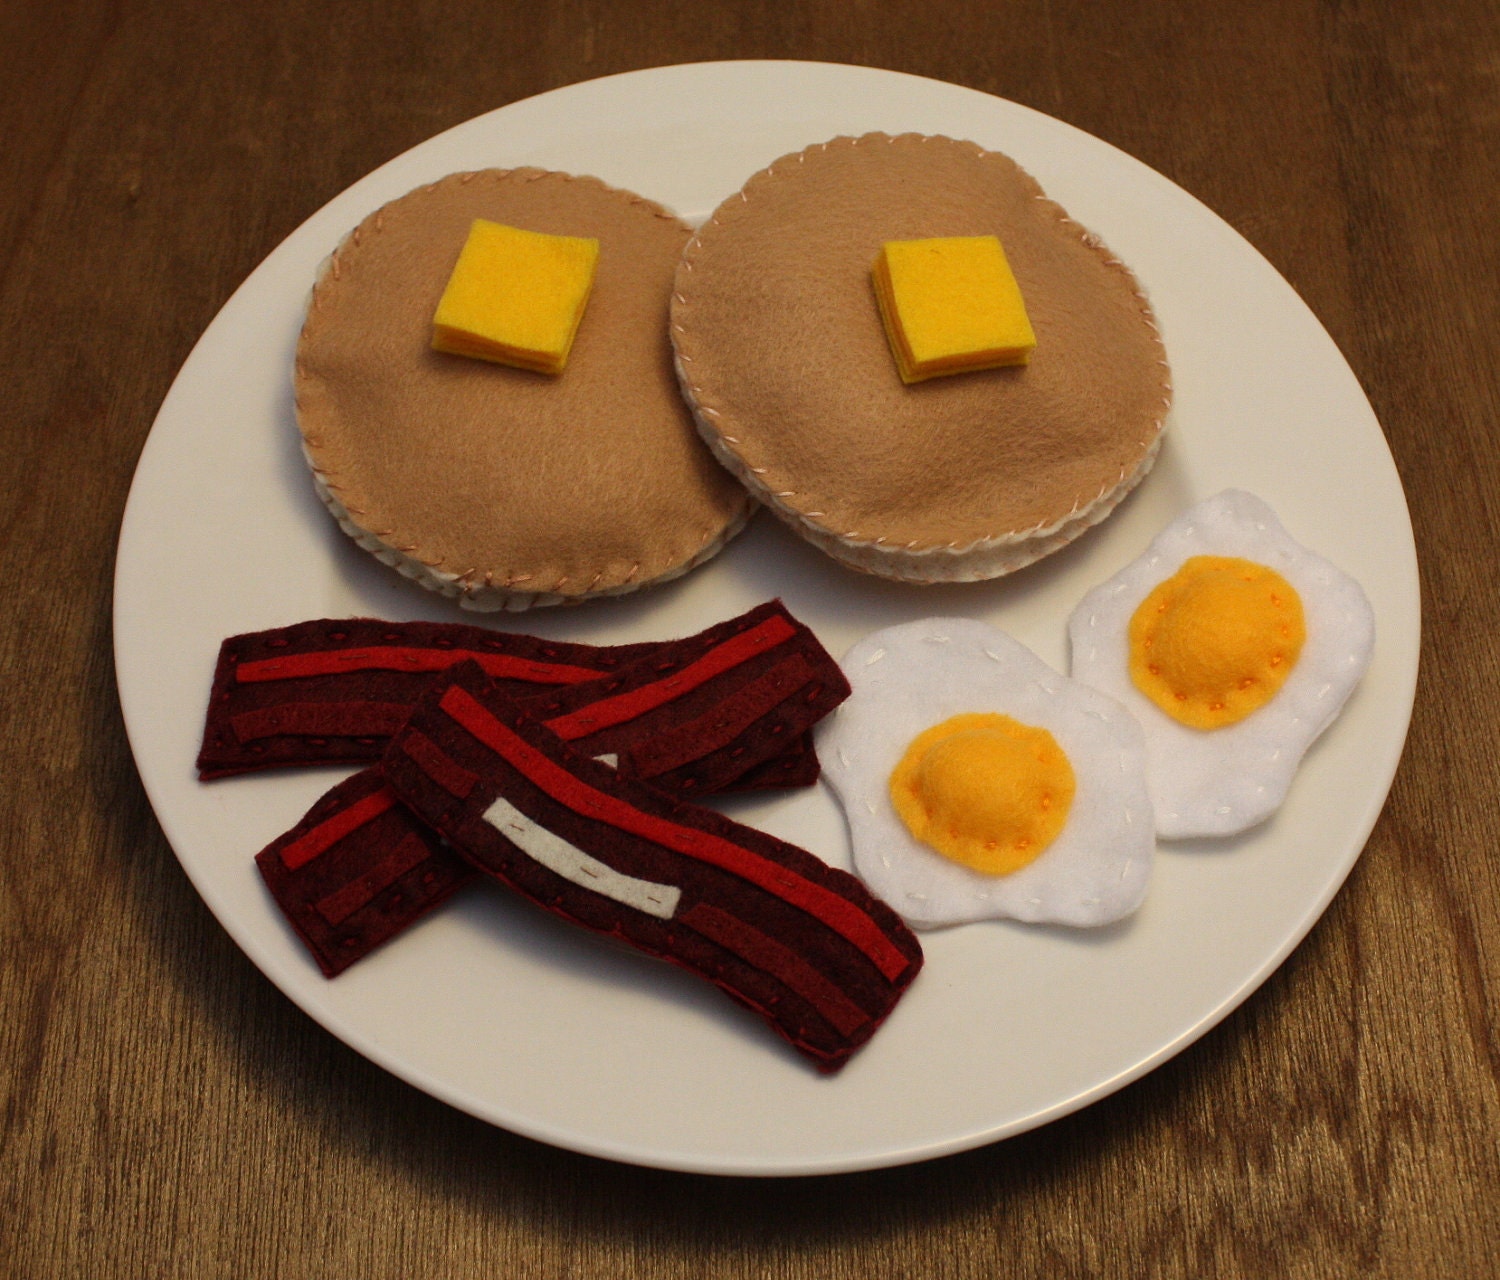 Felt Play Food - Pancakes, Bacon and Eggs